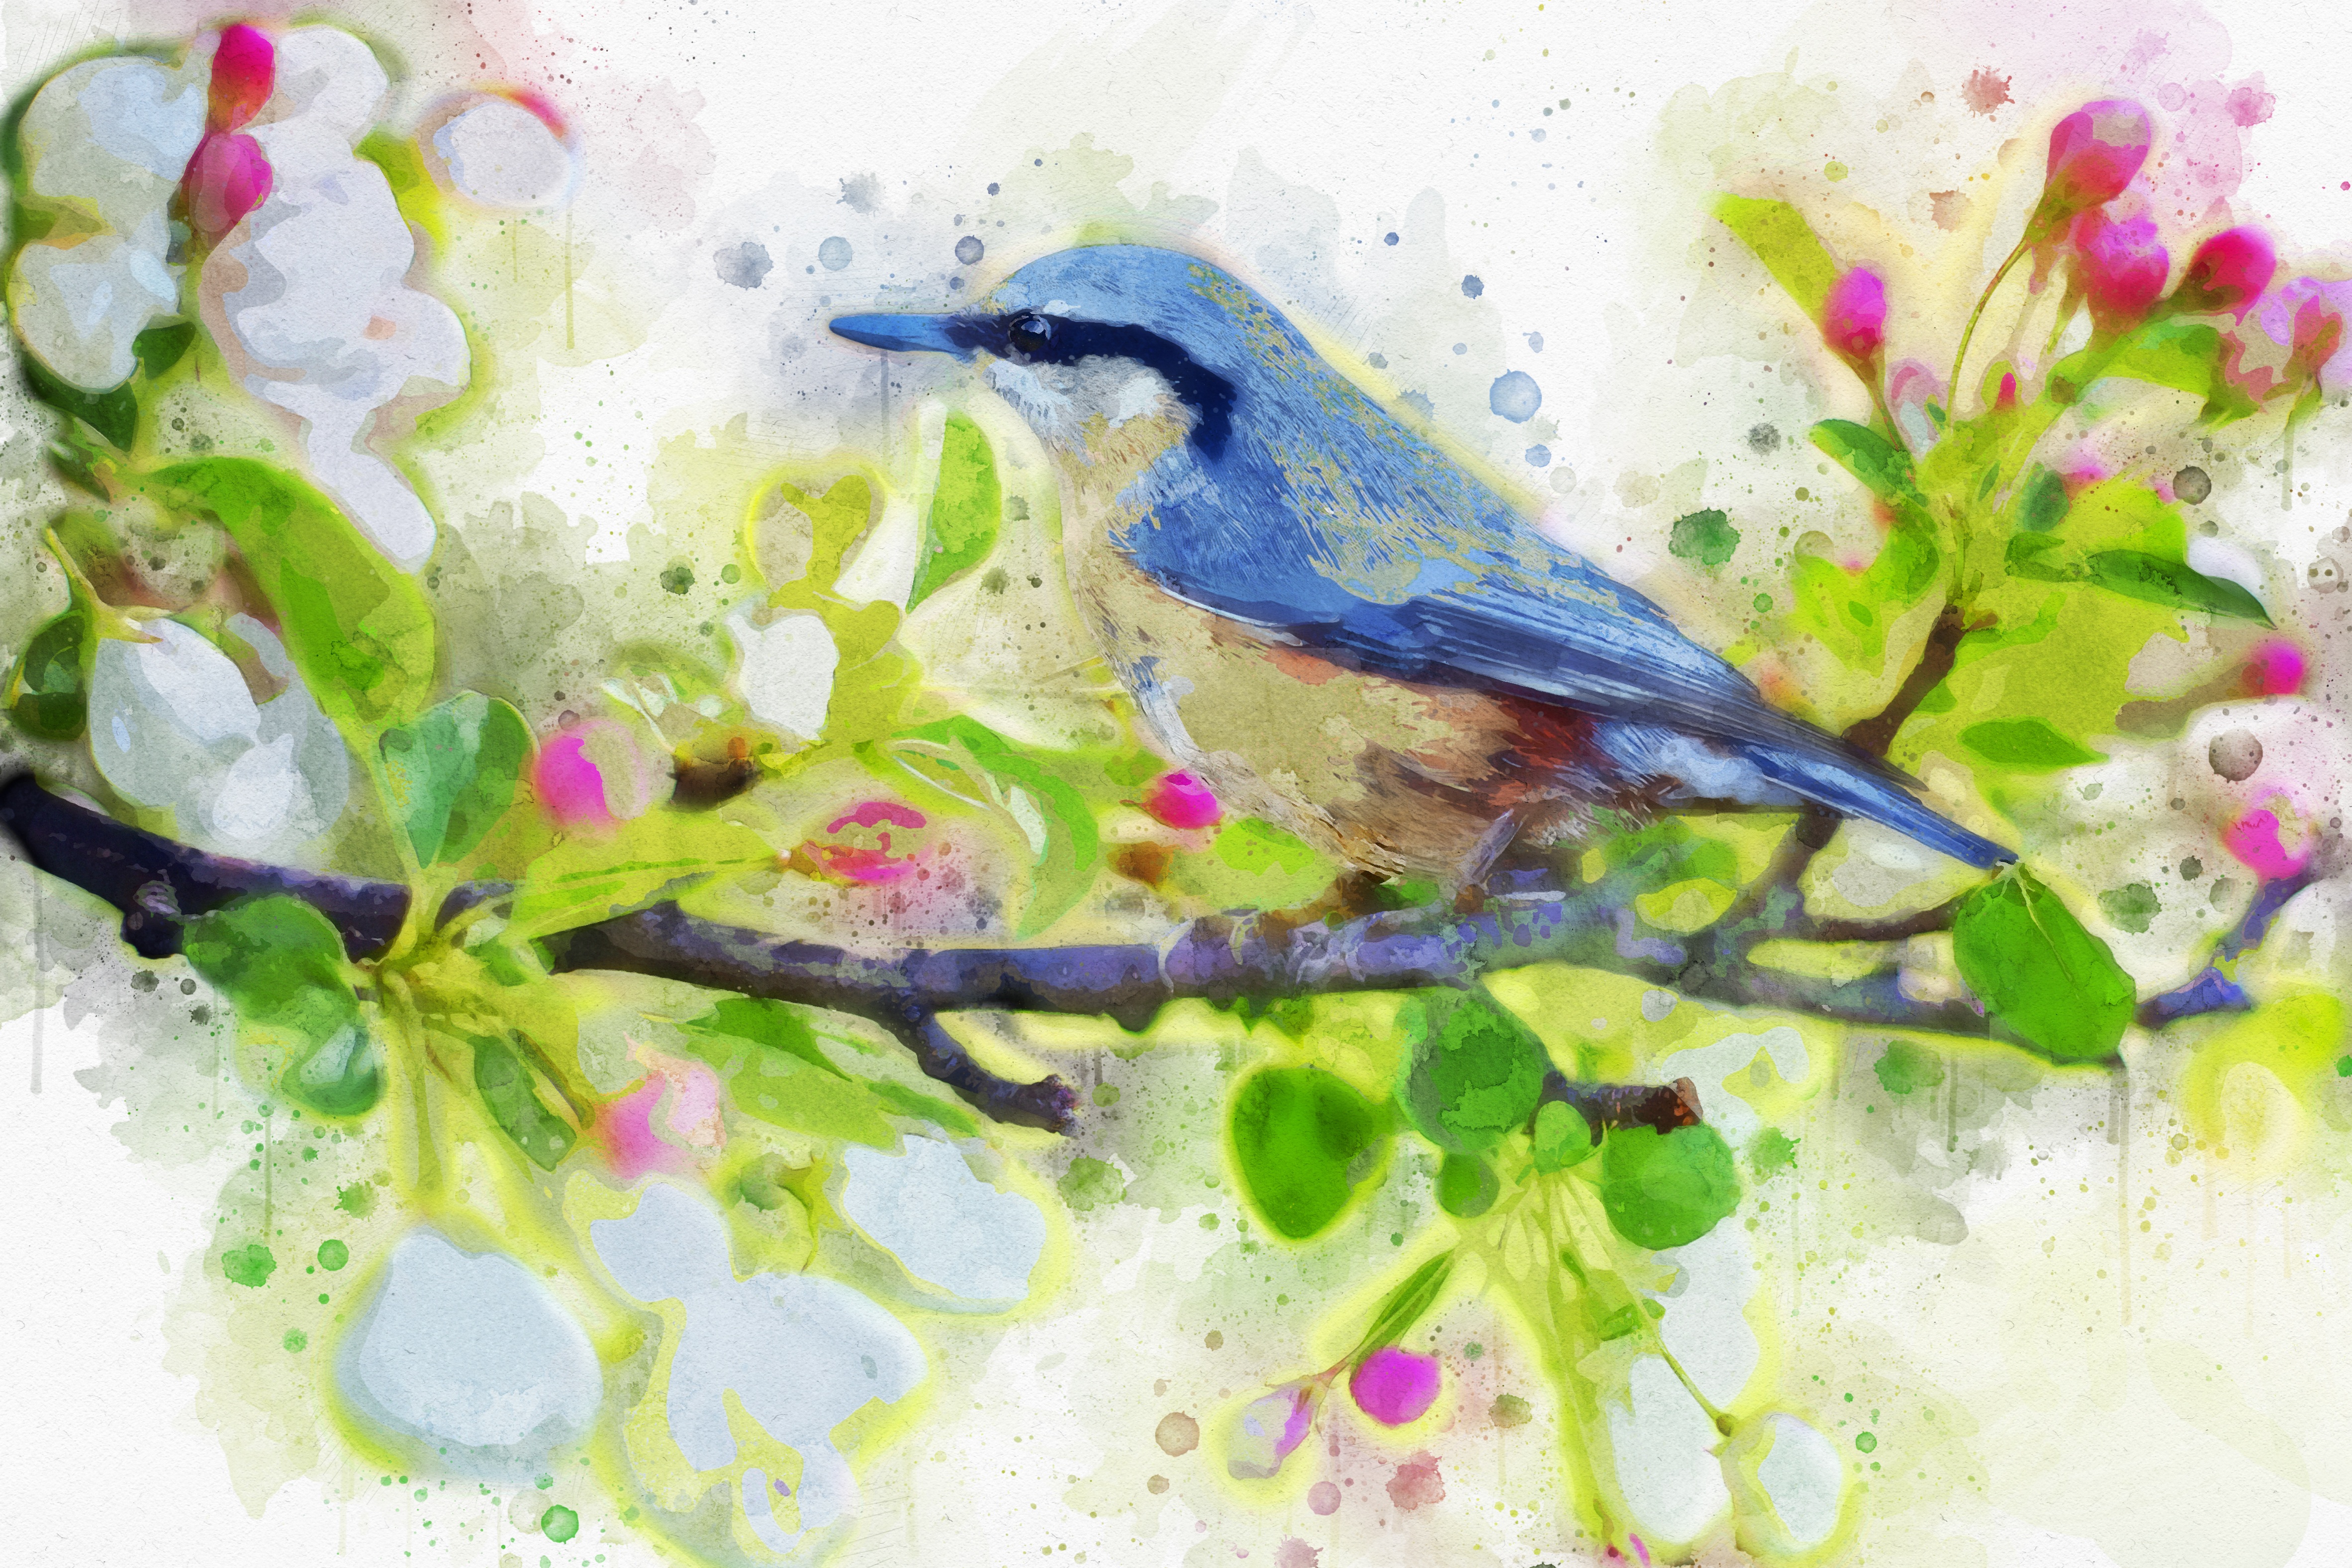 Blue Bird on a Branch by Brigitte Werner